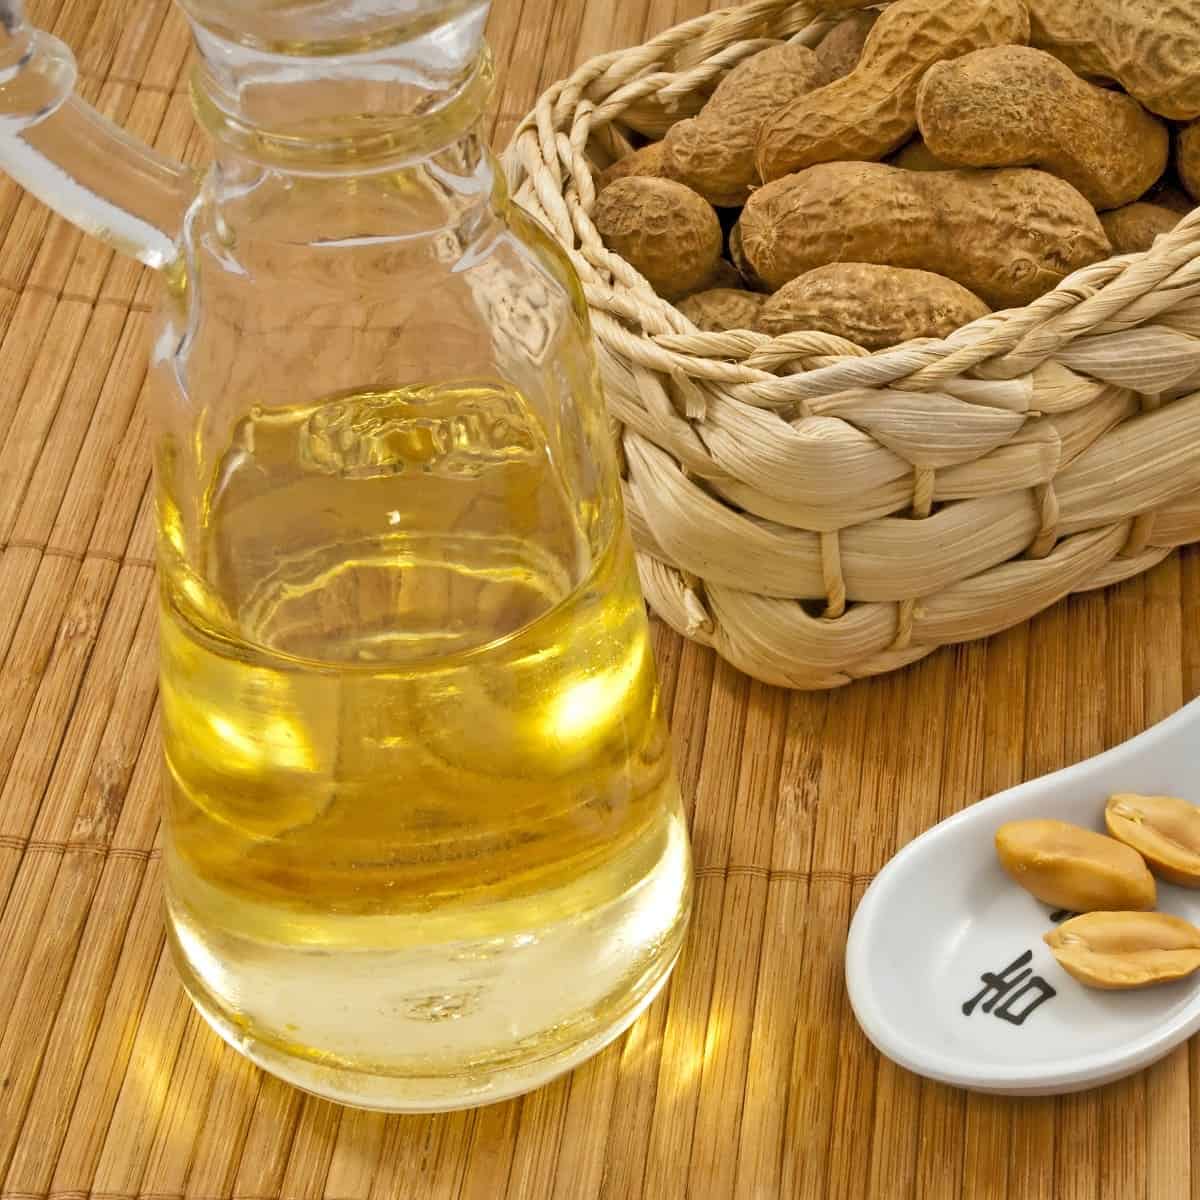 substitutes for peanut oil